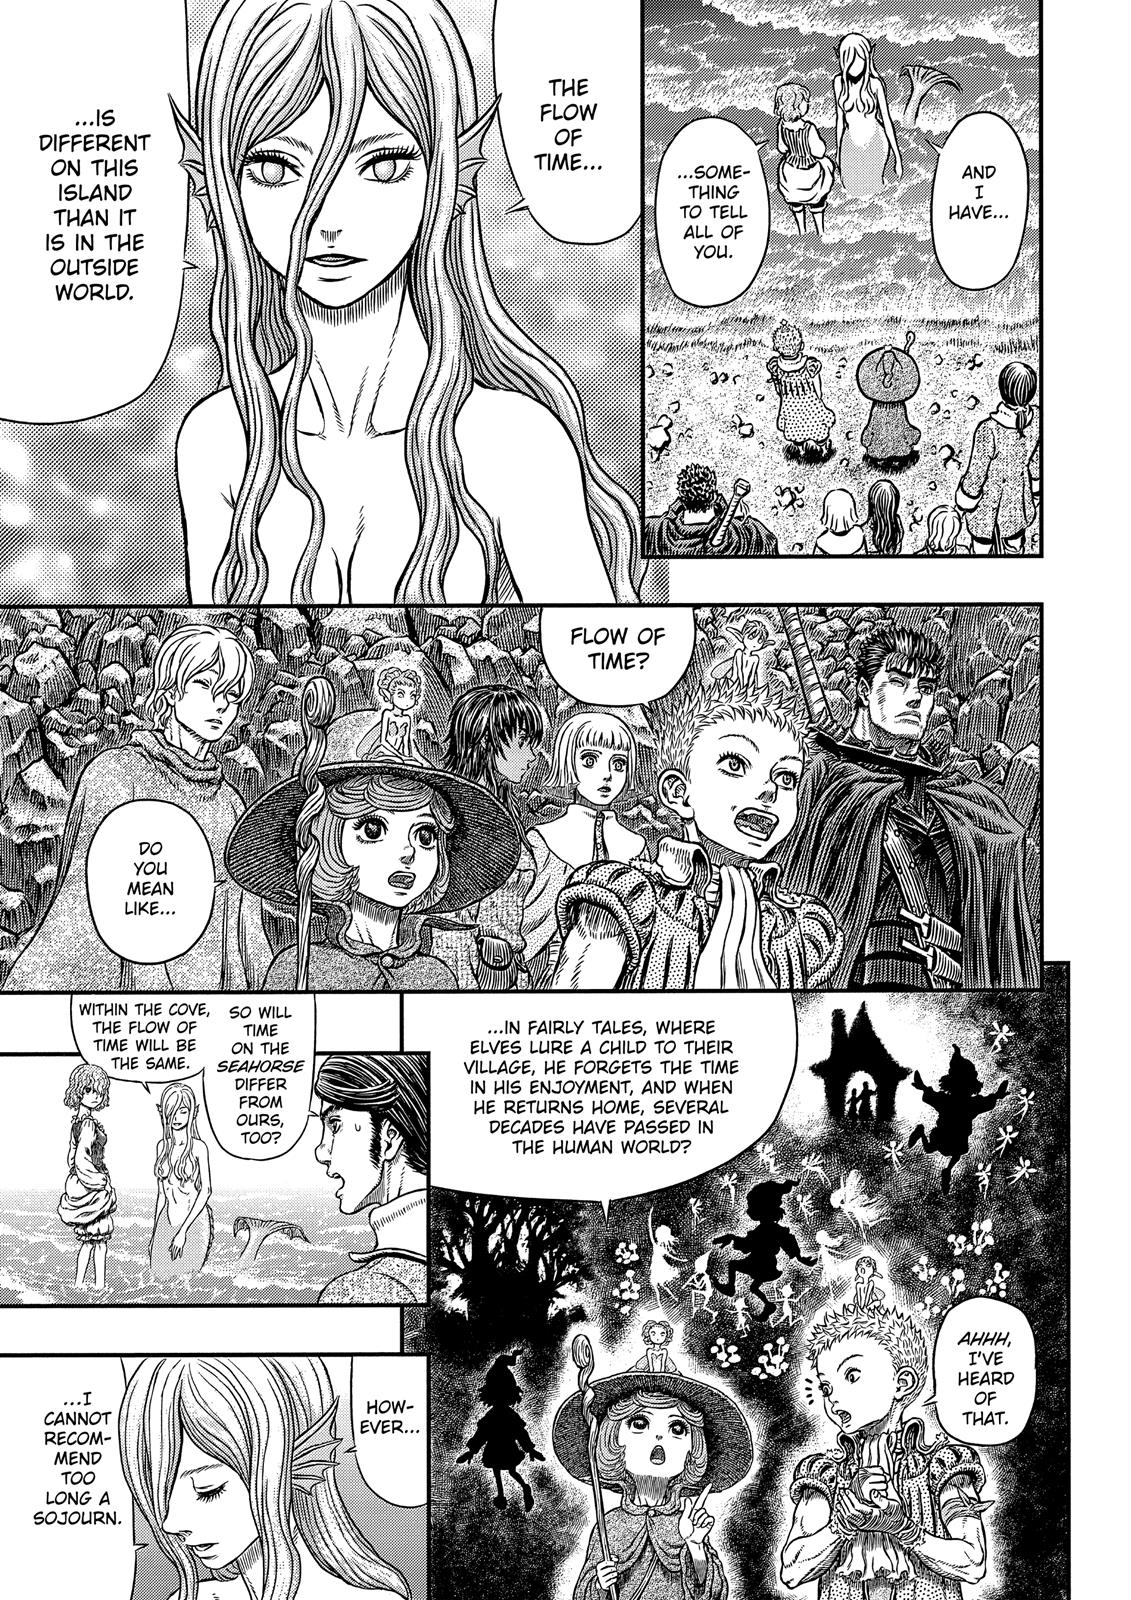 Berserk Manga Chapter 342 image 09